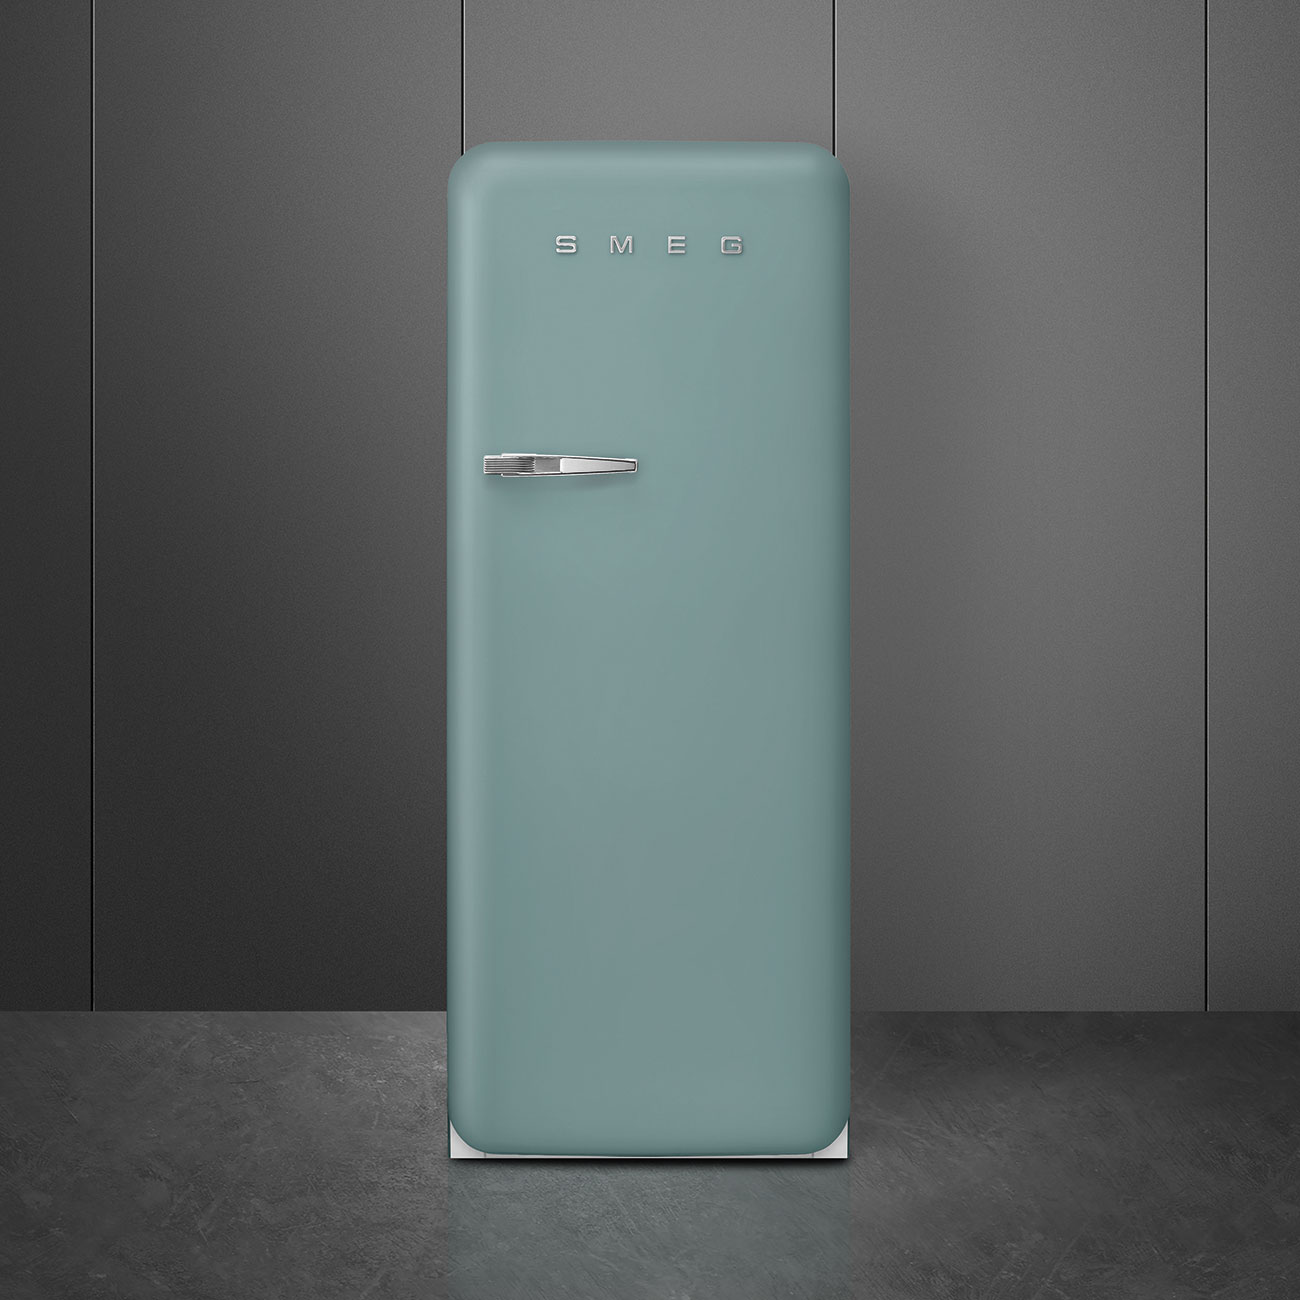 Emerald Green refrigerator - Smeg_5